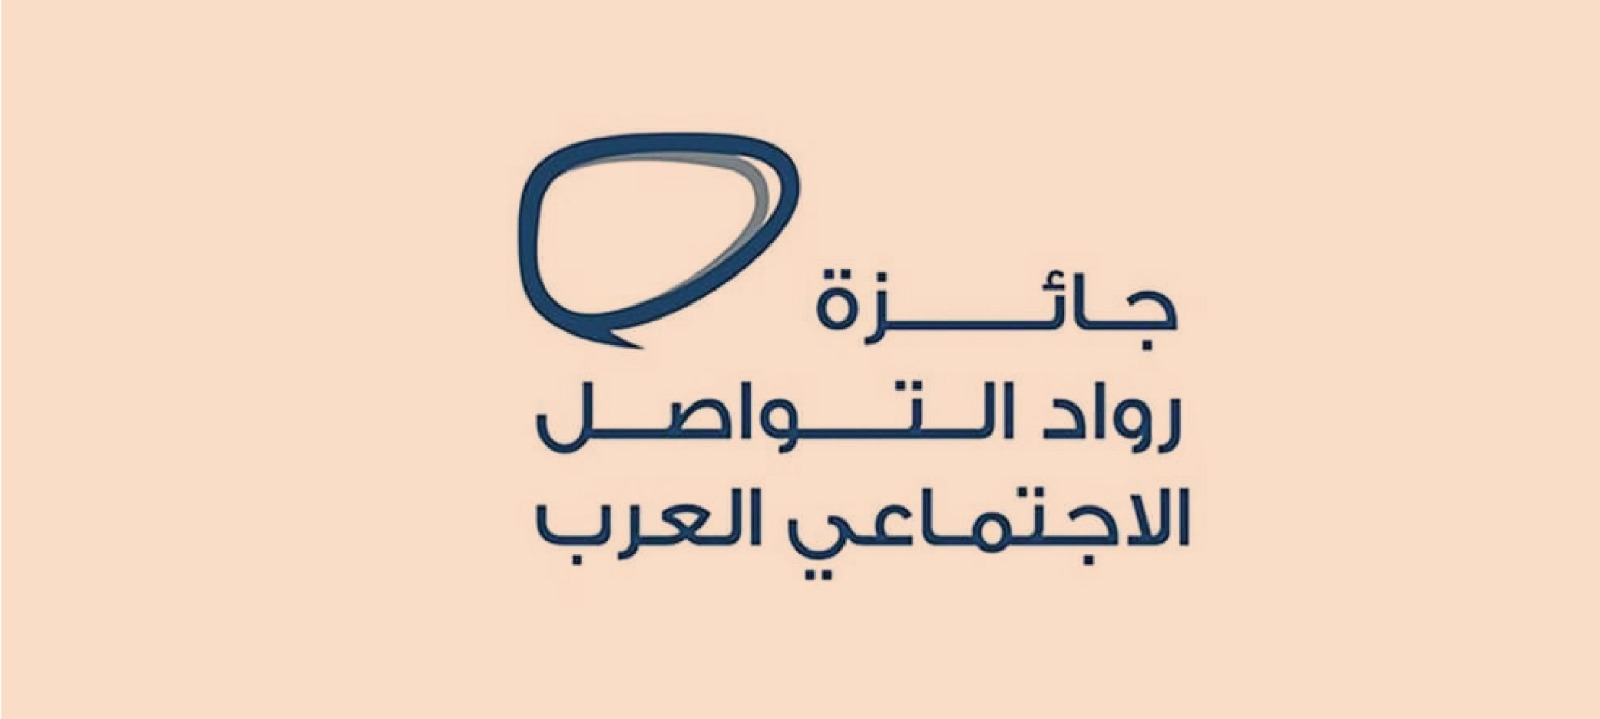 جائزة رواد التواصل الاجتماعي العرب منصة رائدة لتحفيز صناع المحتوى الهادف والمبتكر